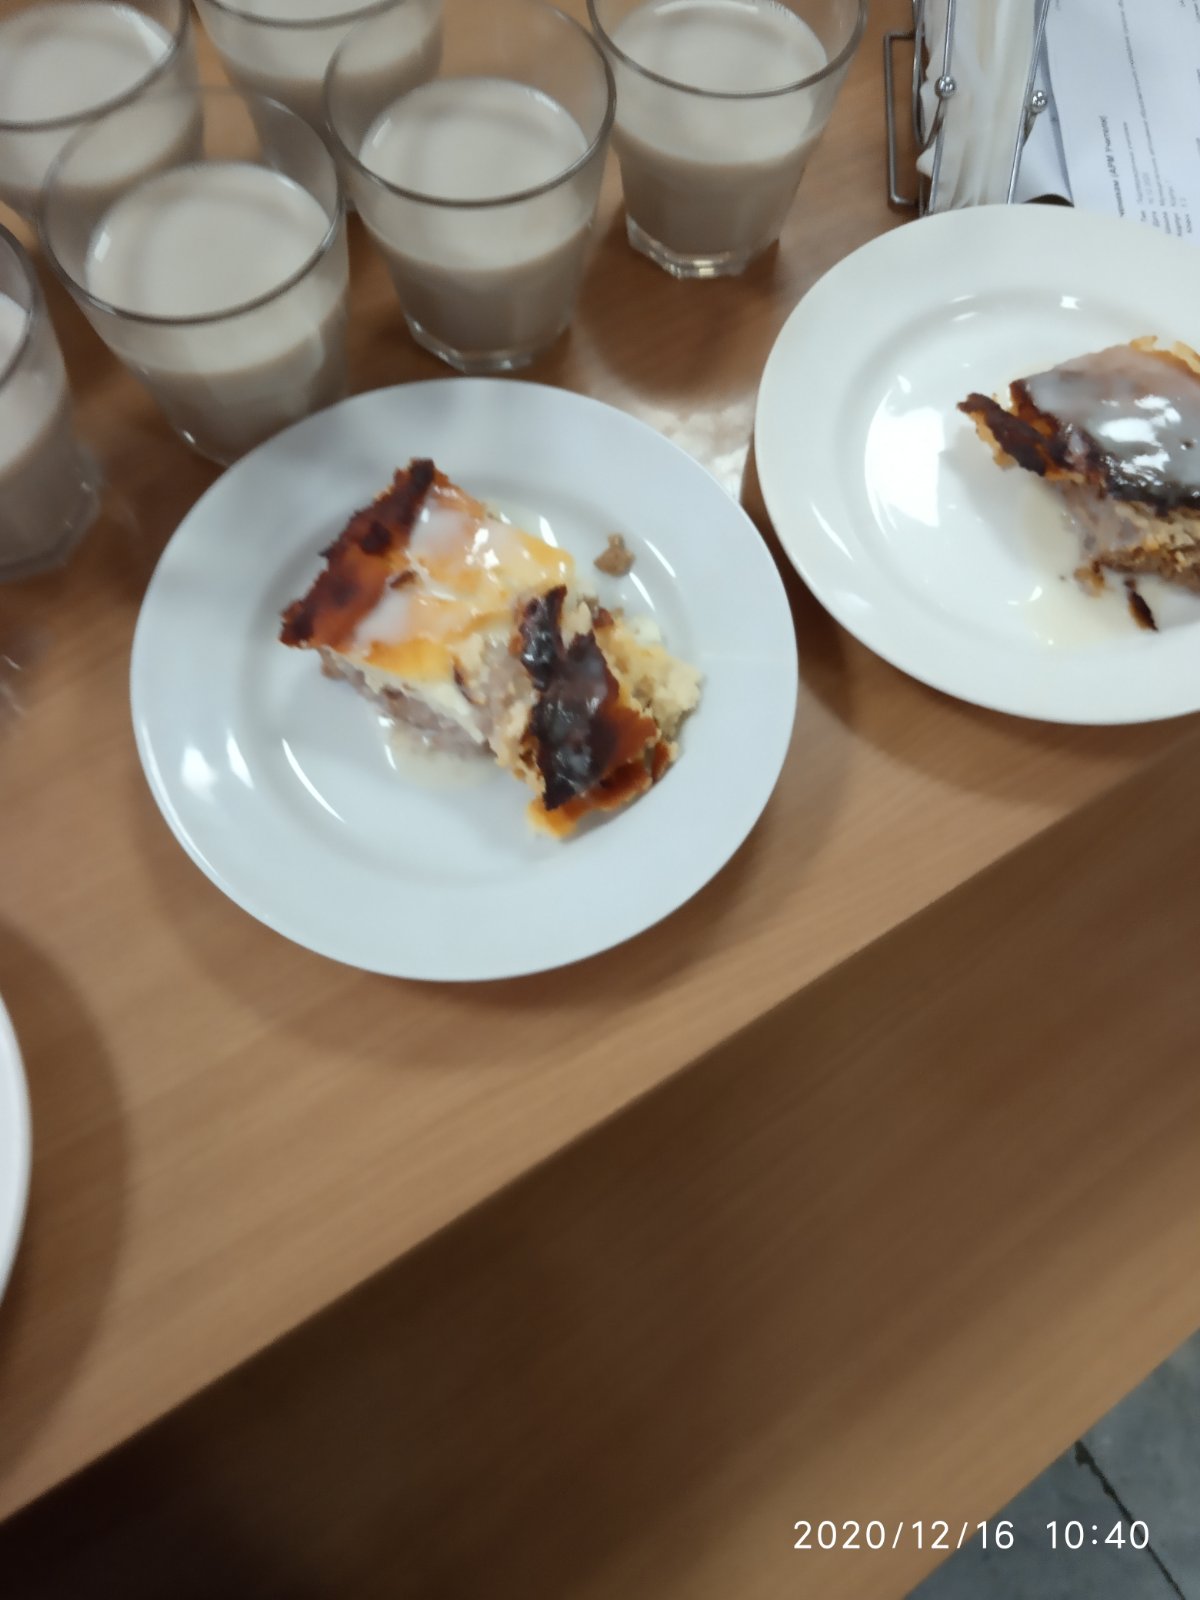 Фото еды из школы, которую обслуживает КШП «Центральный». Из-за такого питания отец ребенка обратился с жалобой 